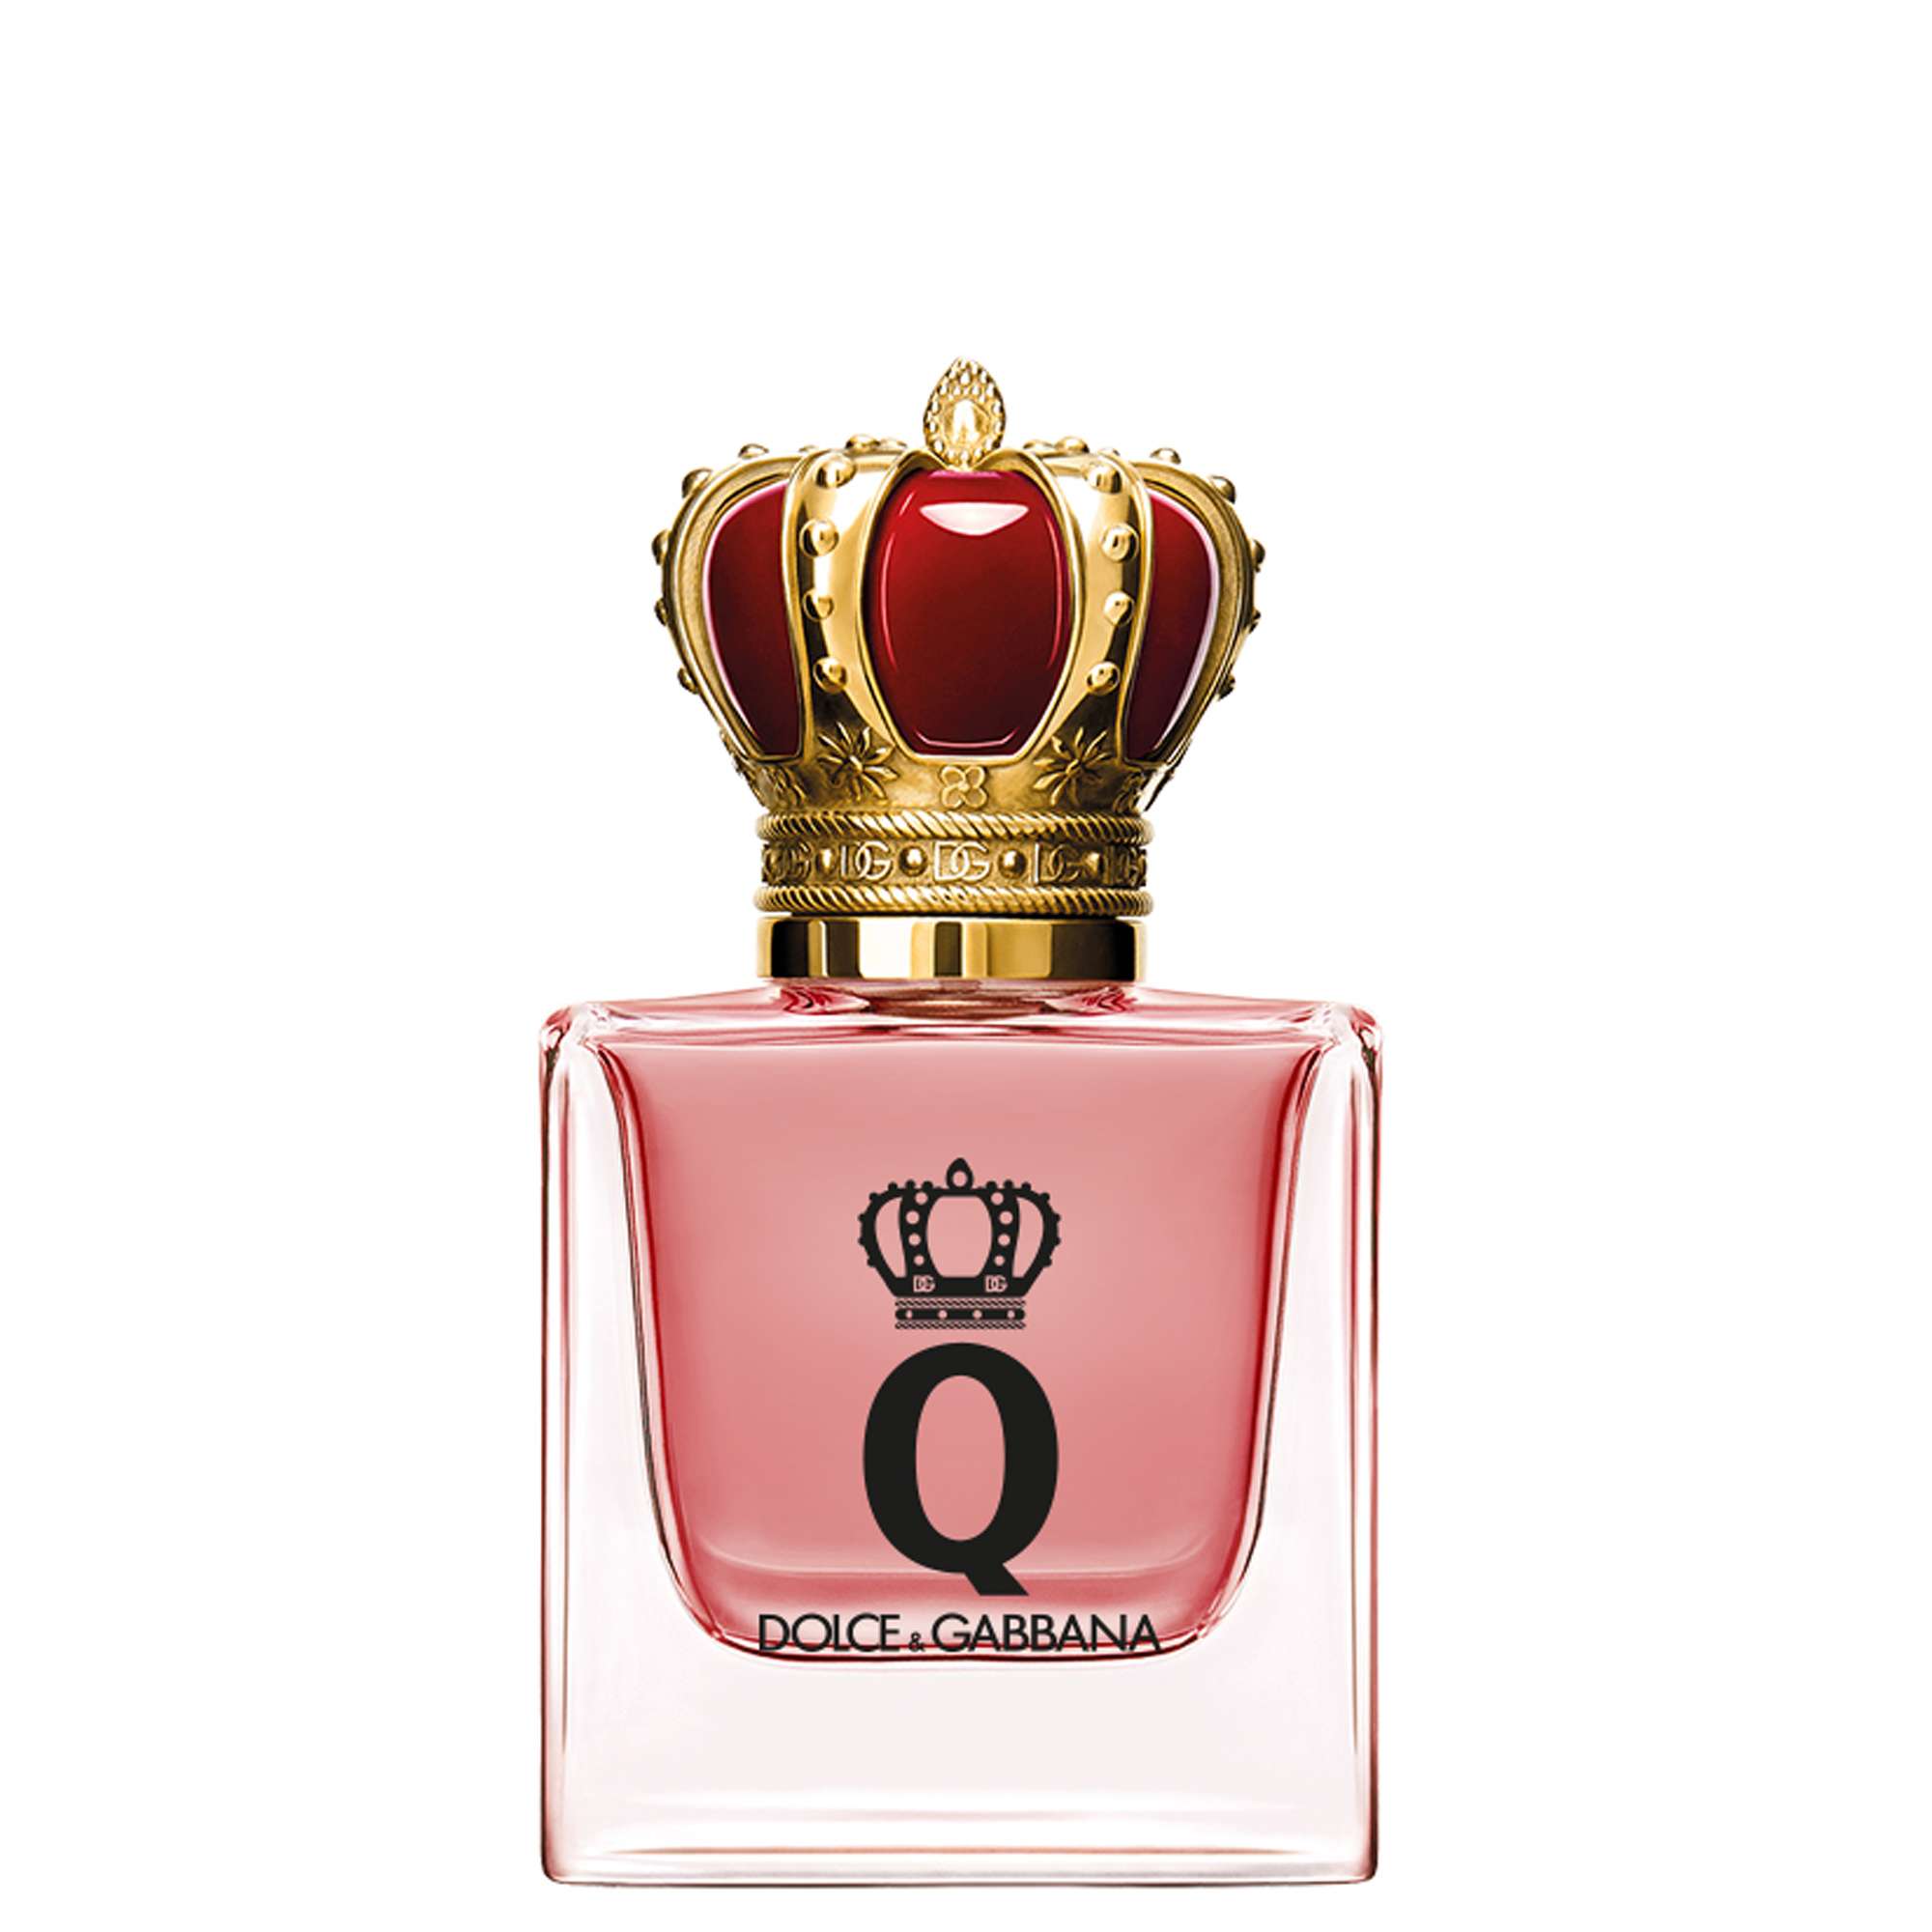 Photos - Women's Fragrance D&G Dolce&Gabbana Q Eau de Parfum Intense Spray 30ml 